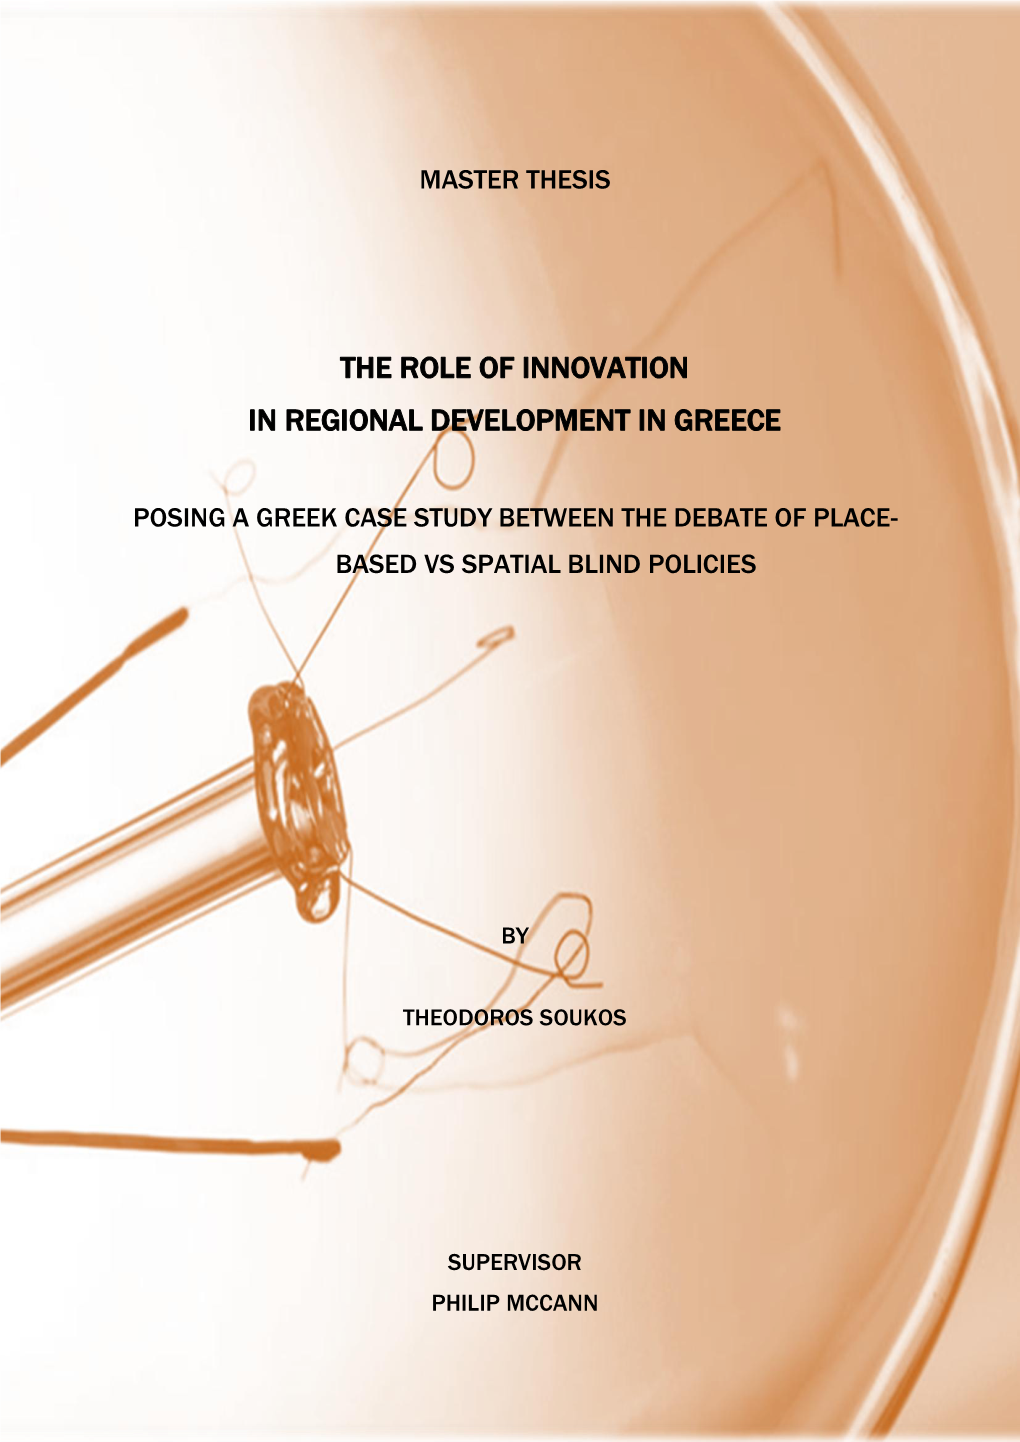 The Role of Innovation in Regional Development in Greece